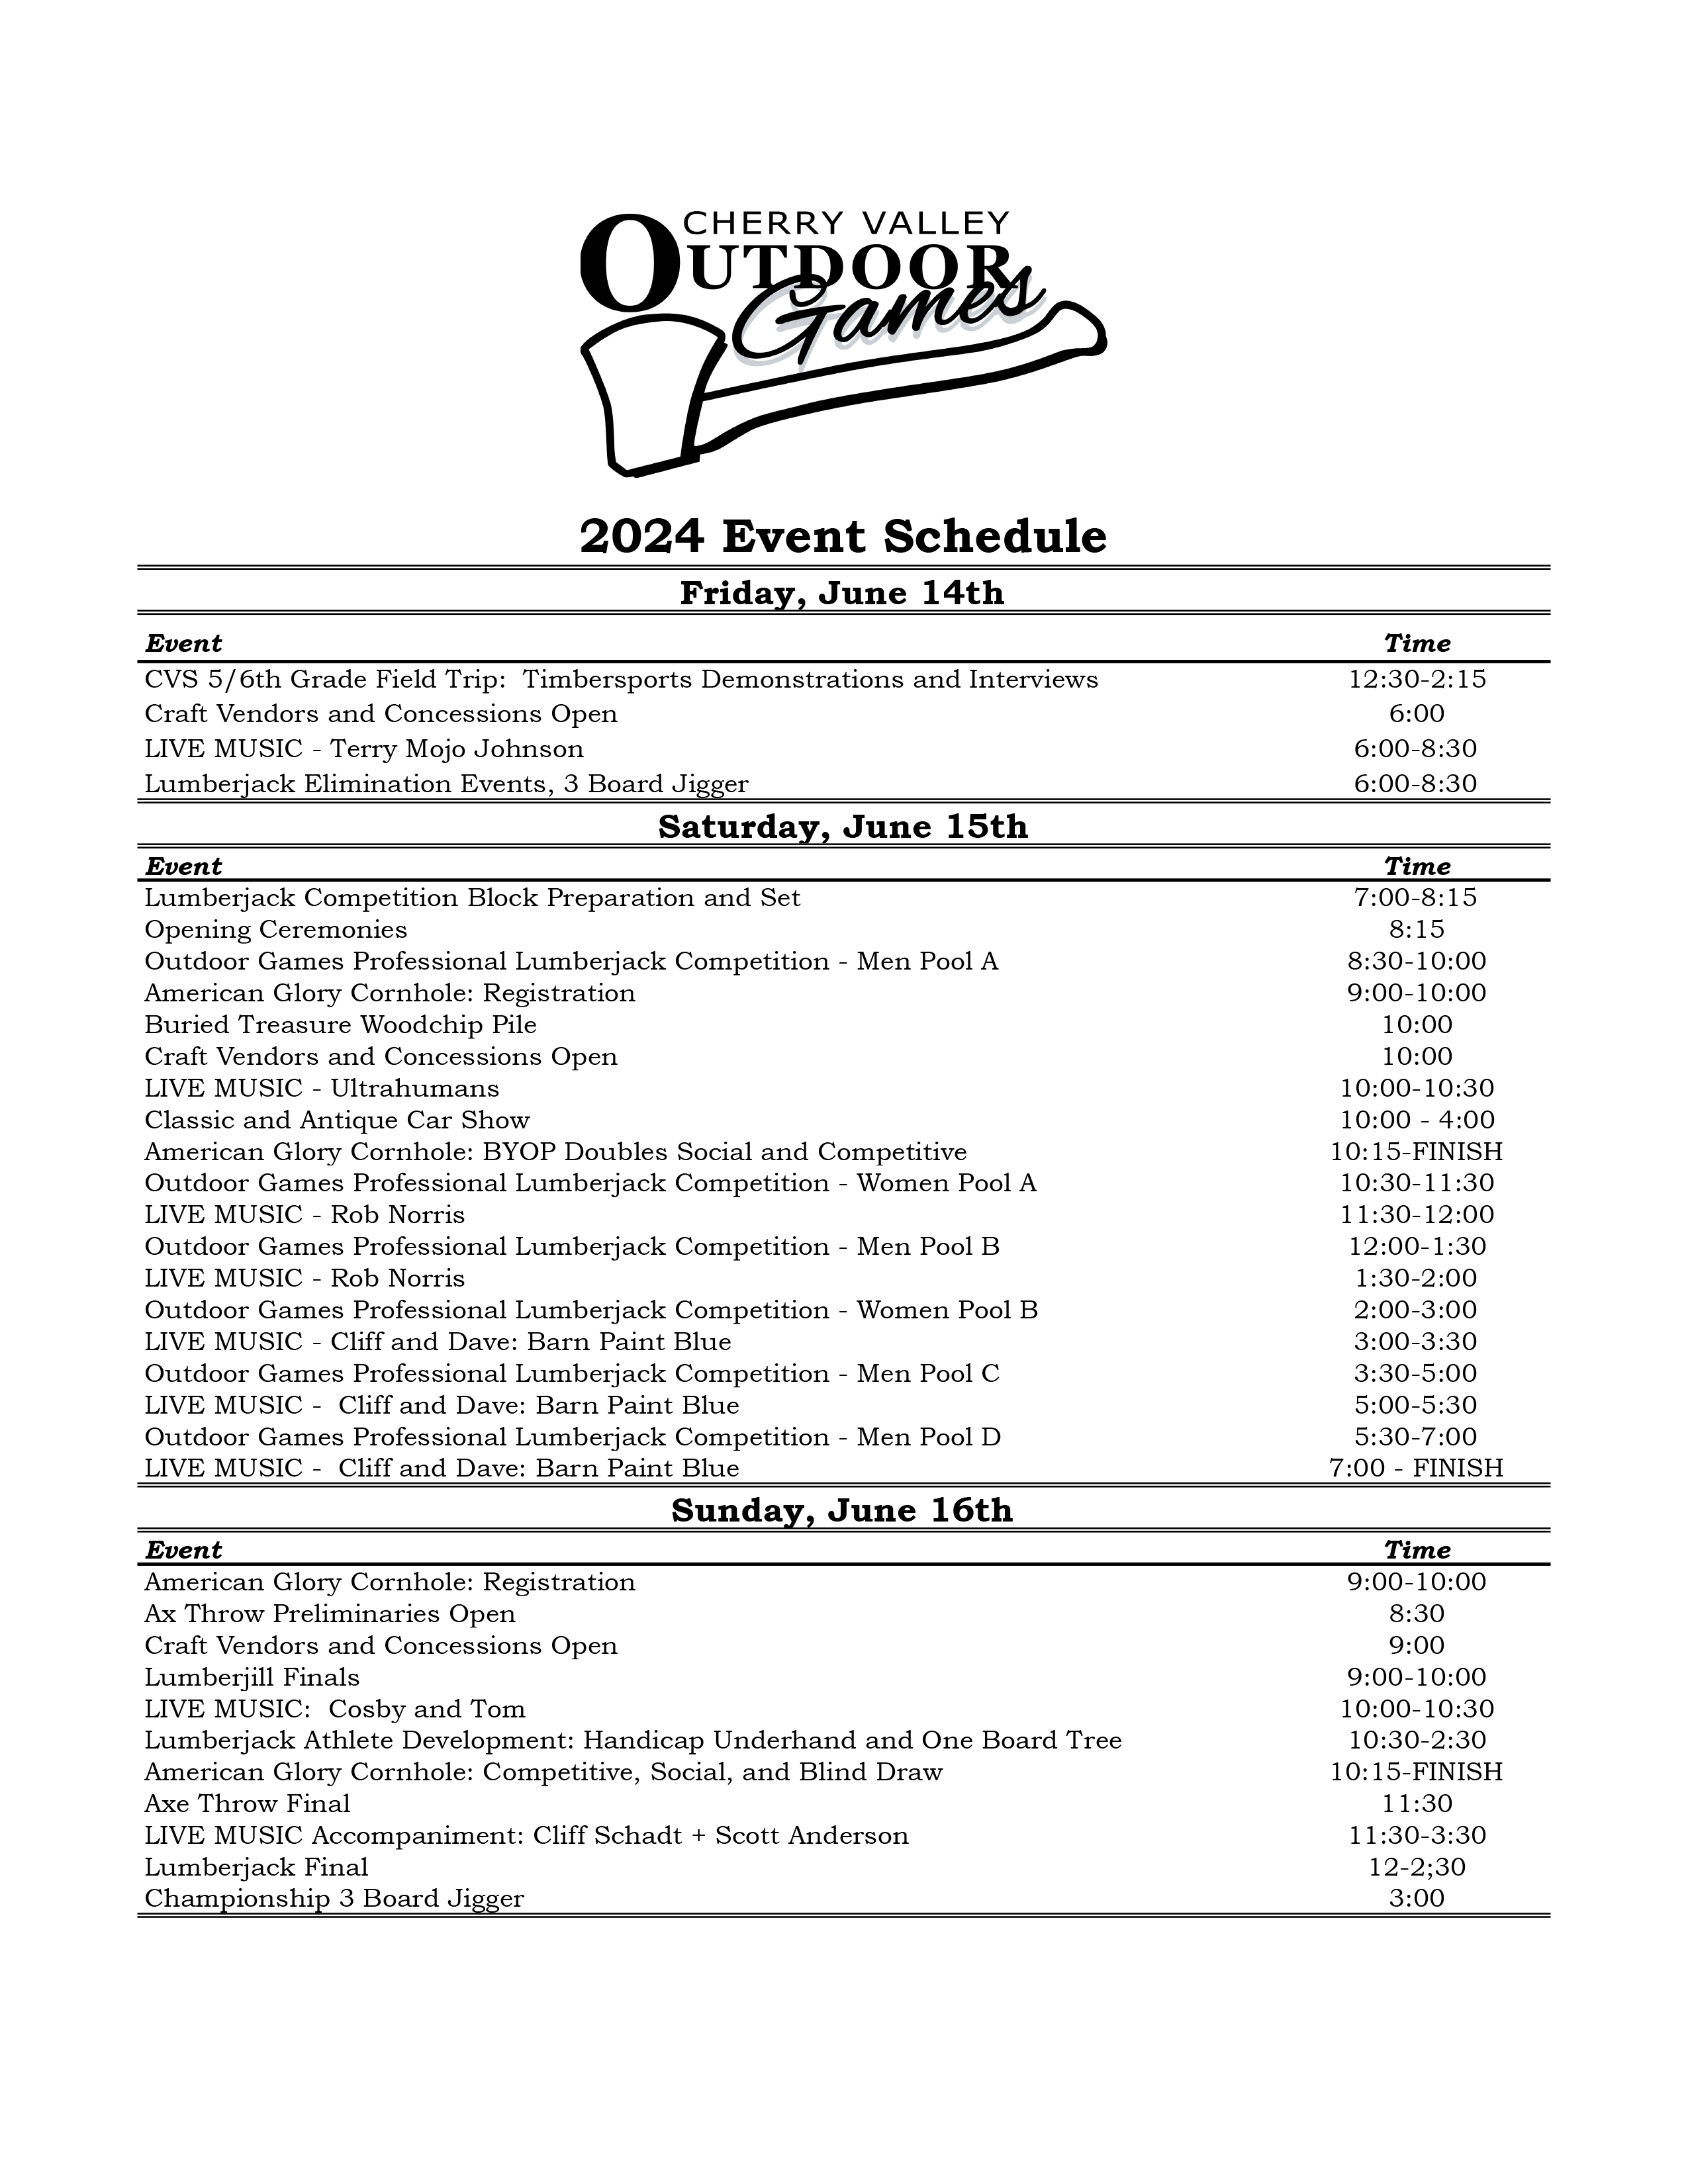 2024 CVOG Event Schedule